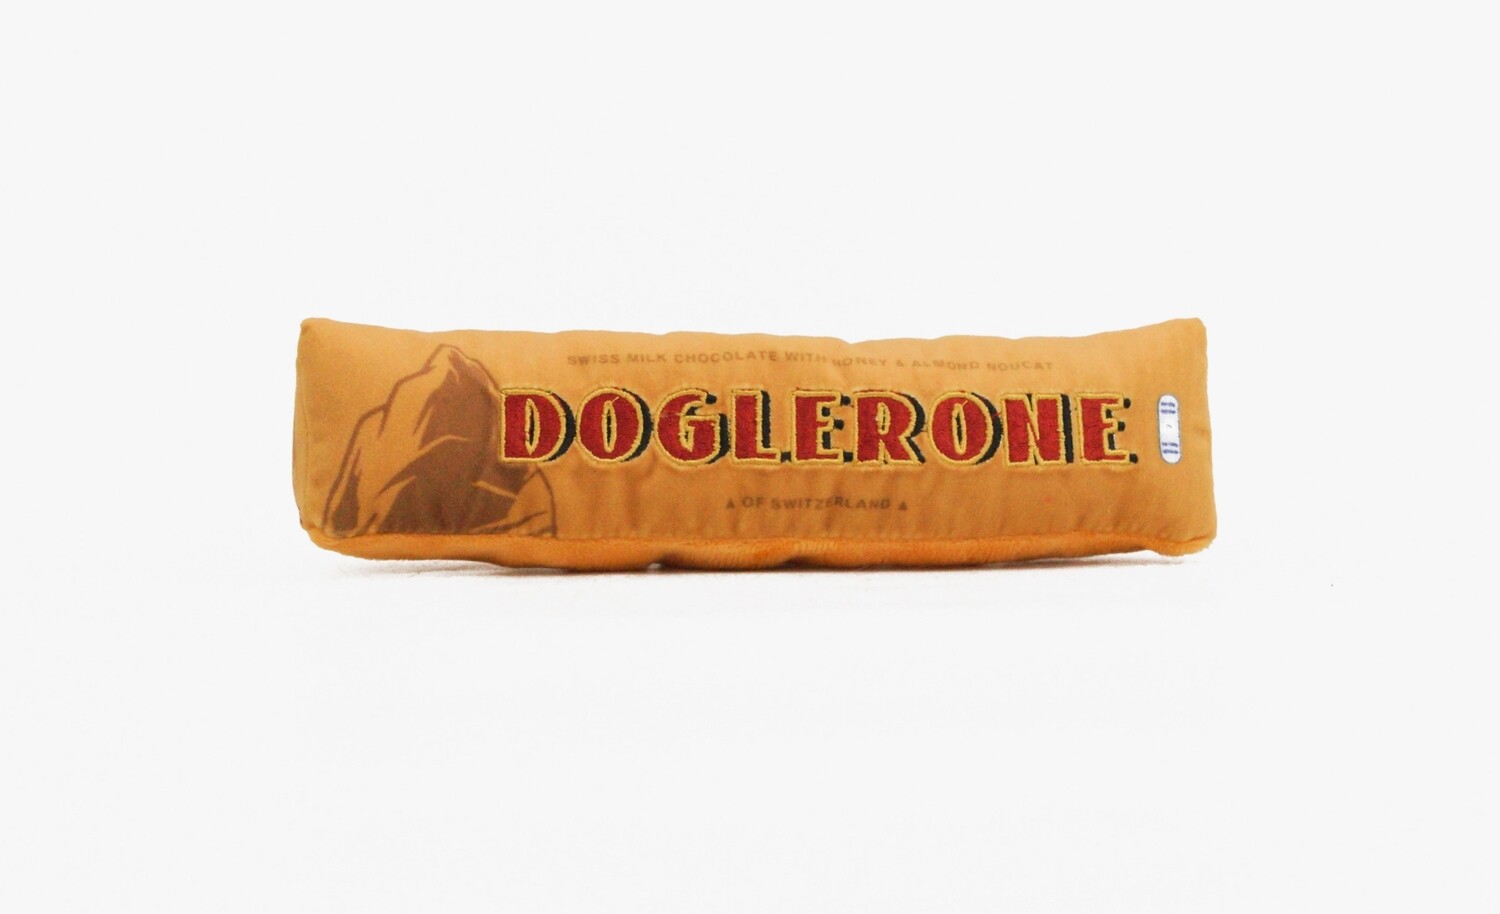 Doglerone Toy